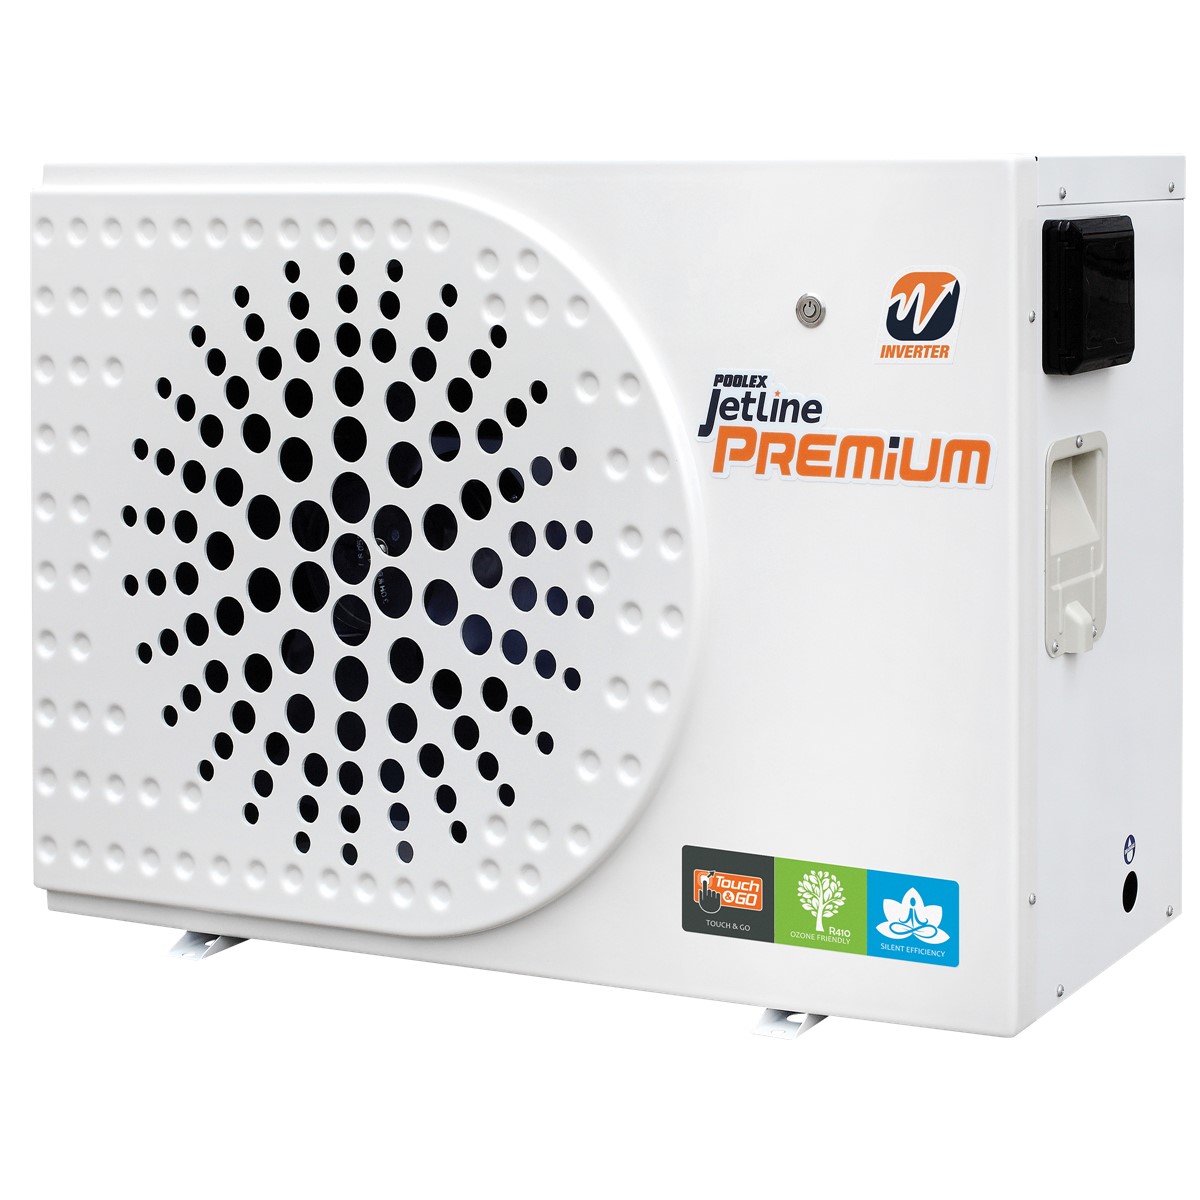 Pompe à chaleur Poolex Jetline Premium Inverter R32